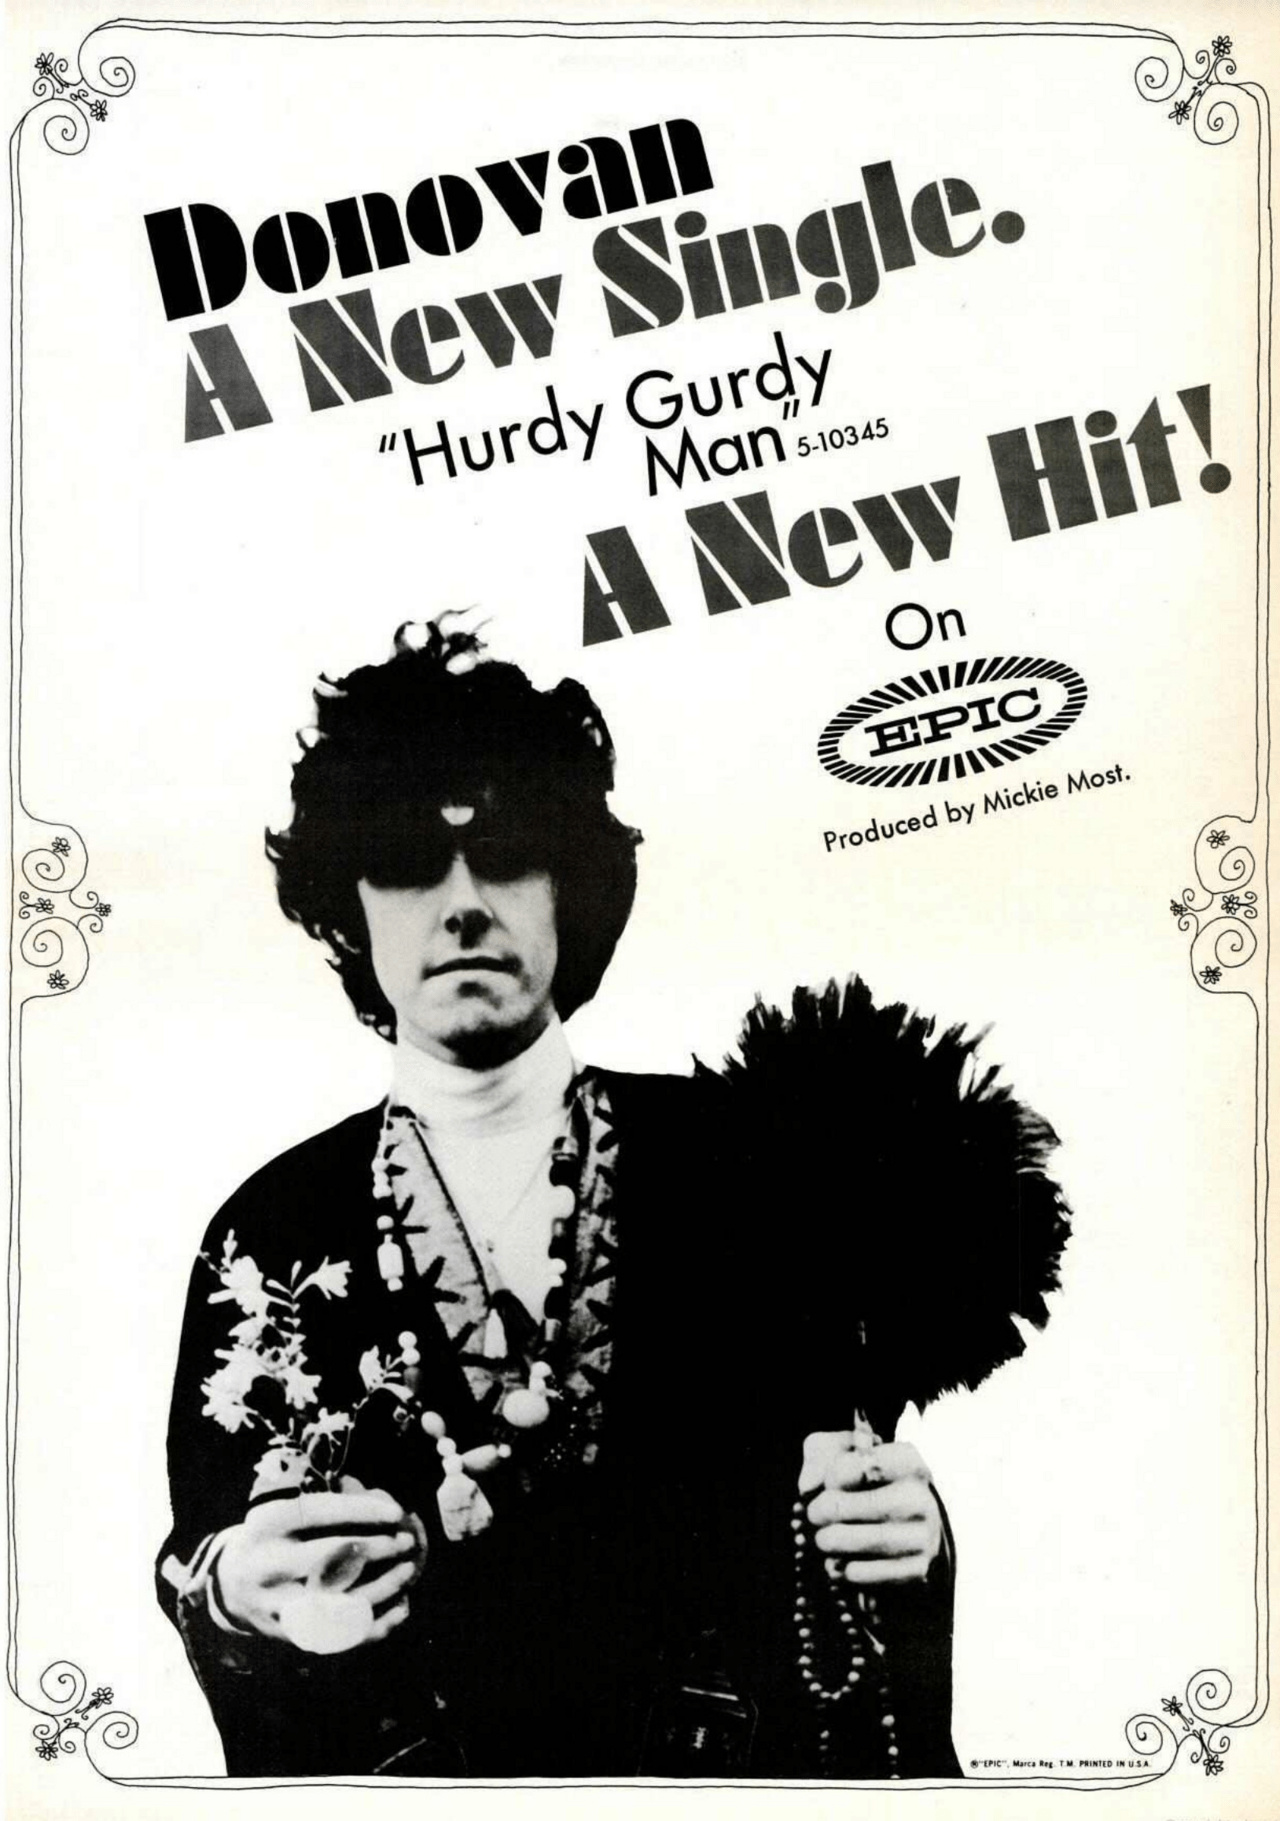 Billboard advertisement, June 15, 1968